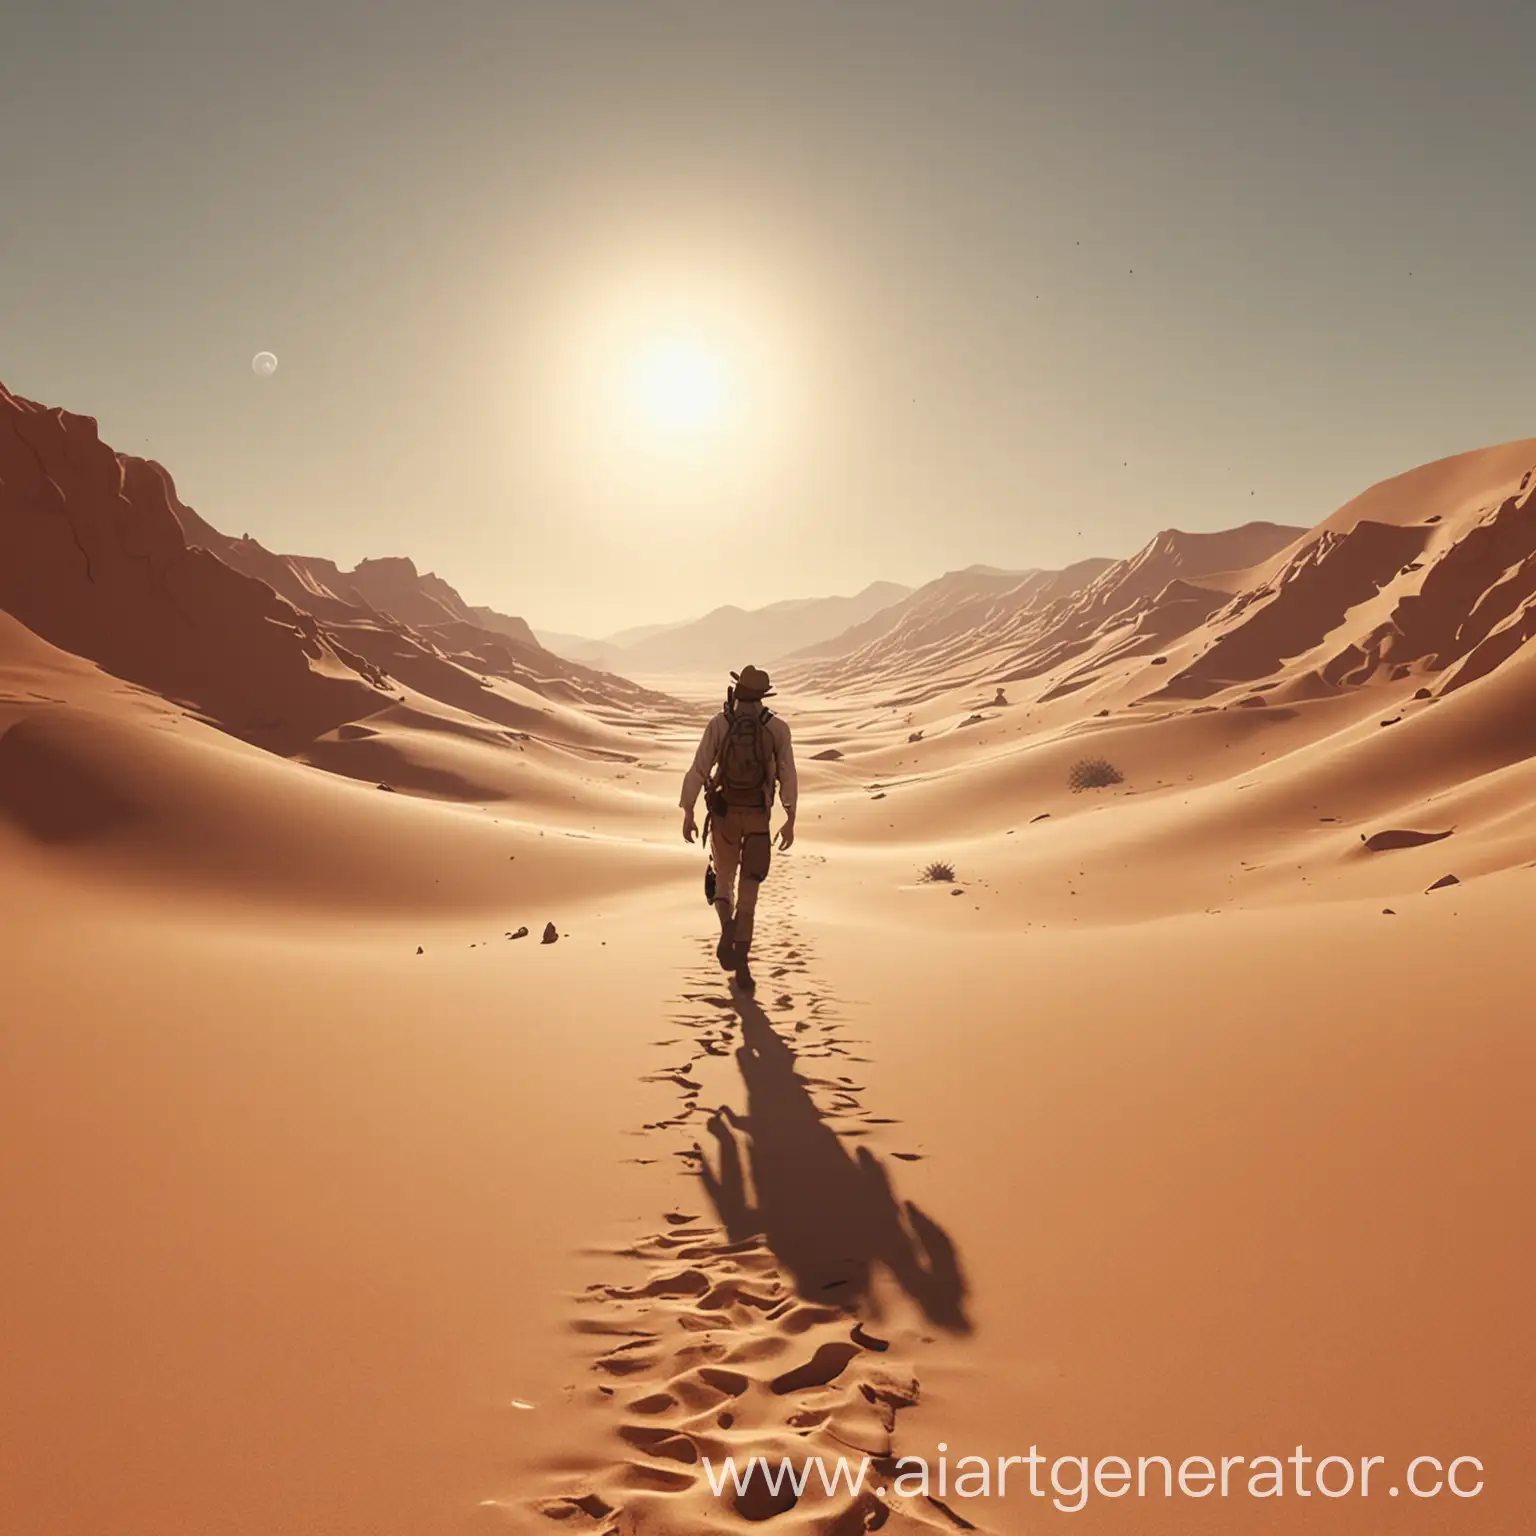 Solo-Traveler-Trekking-Across-Arid-Desert-Landscape